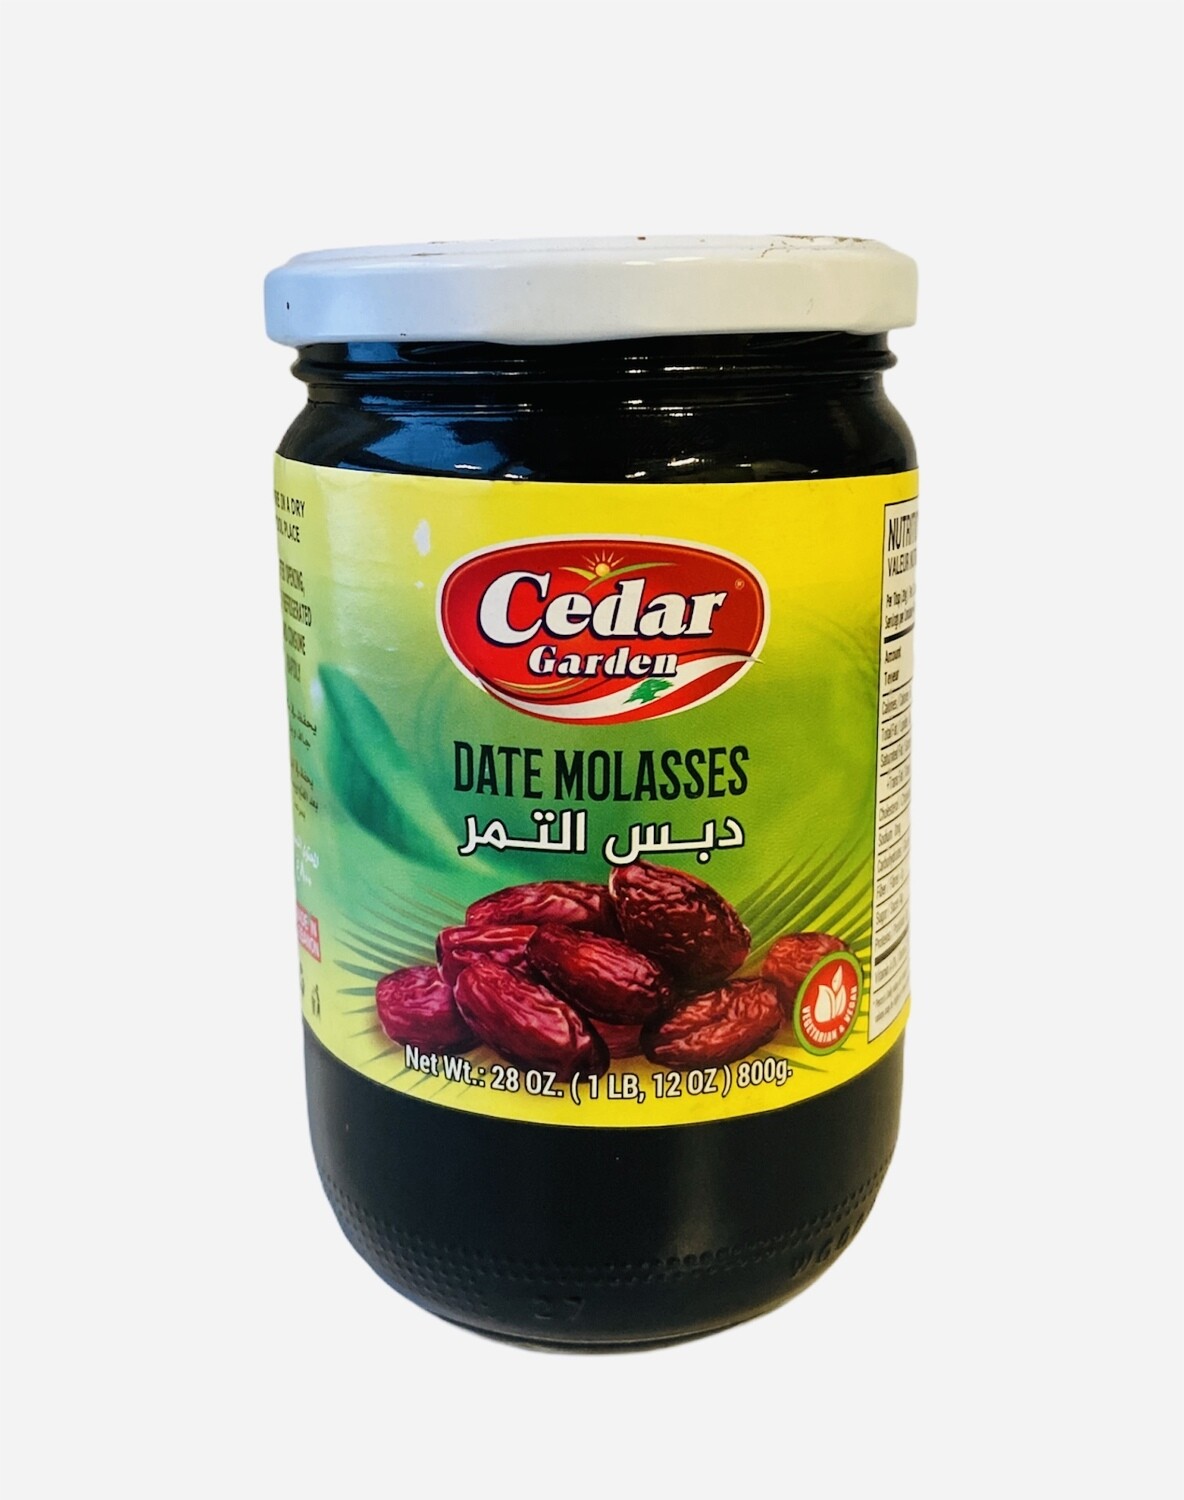 Cedar Garden Date Molasses 12x2lb